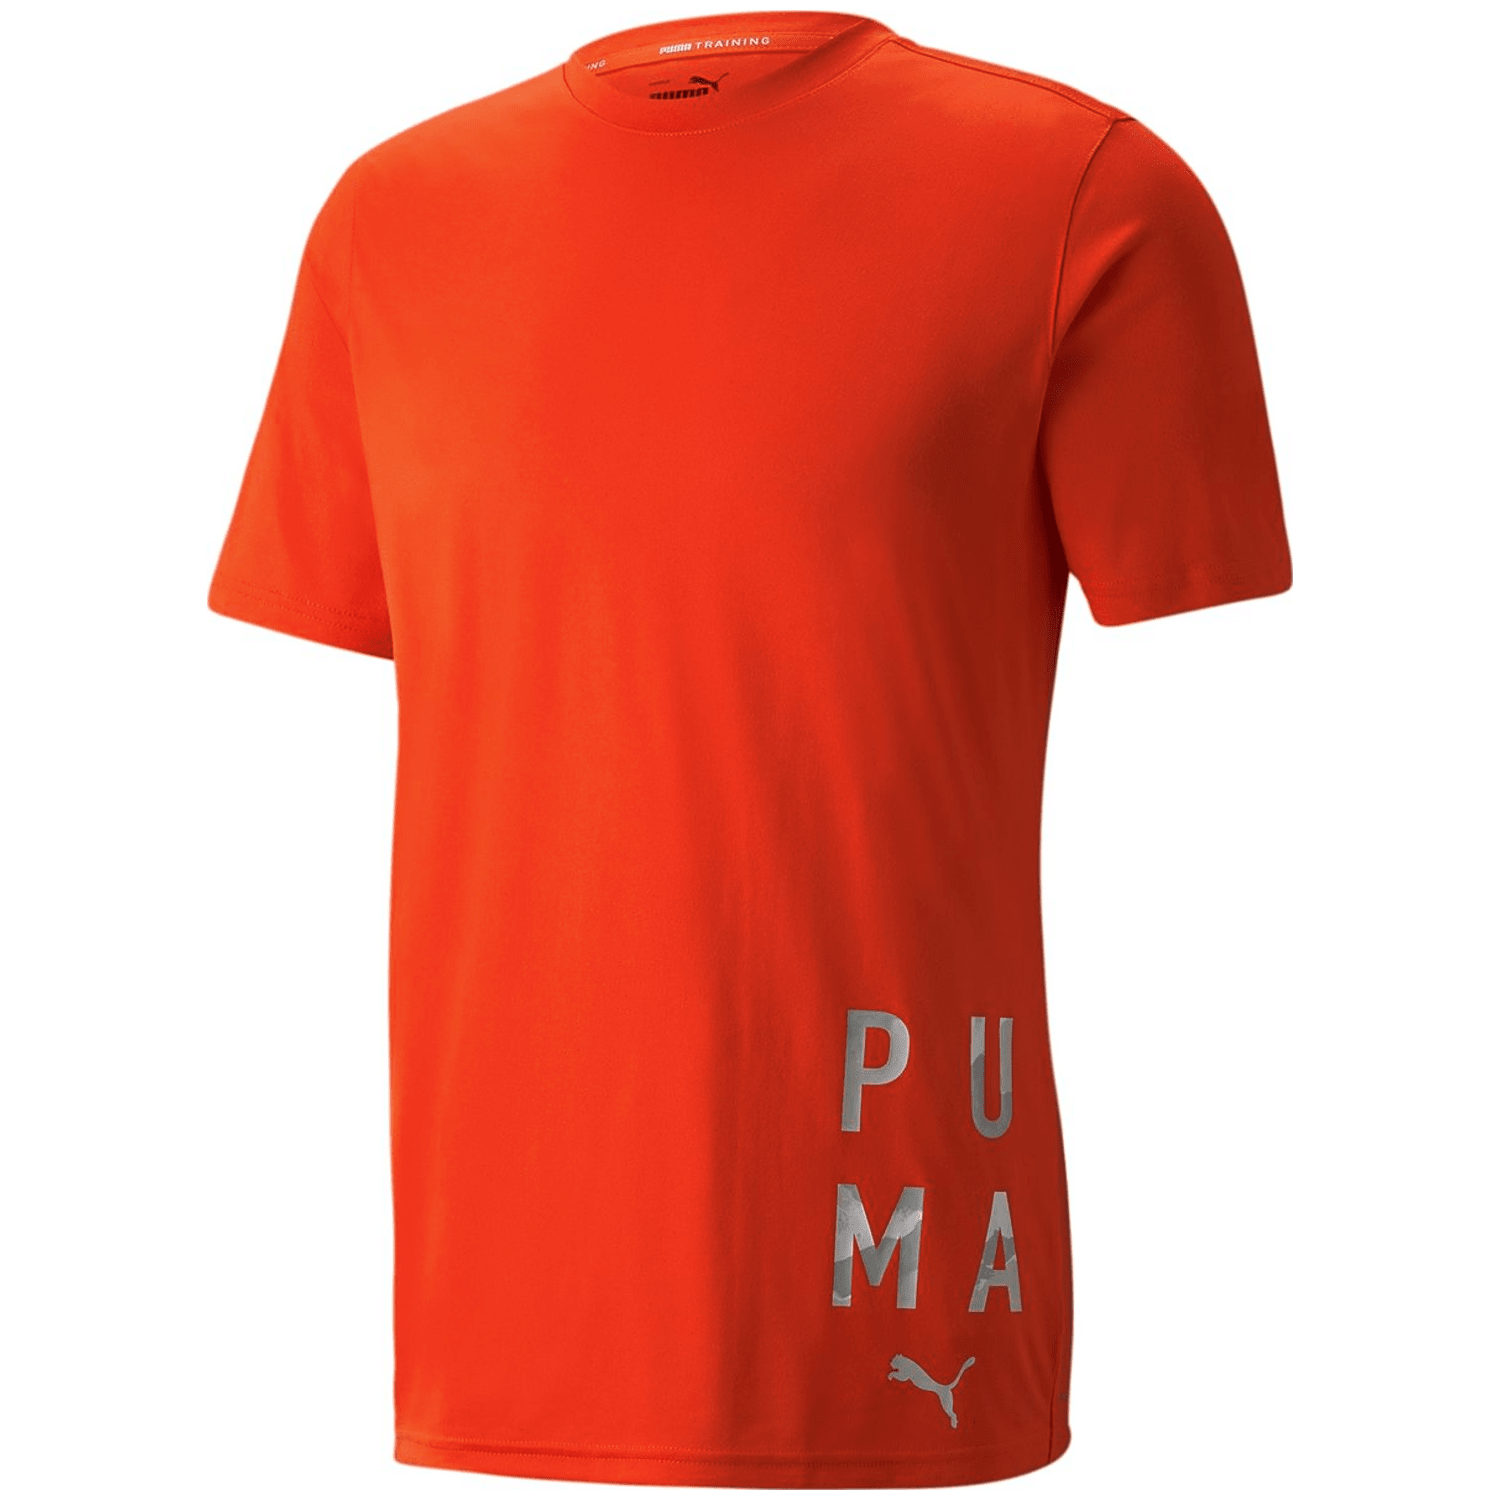 Puma Train Graphic TEE Herren T-Shirt